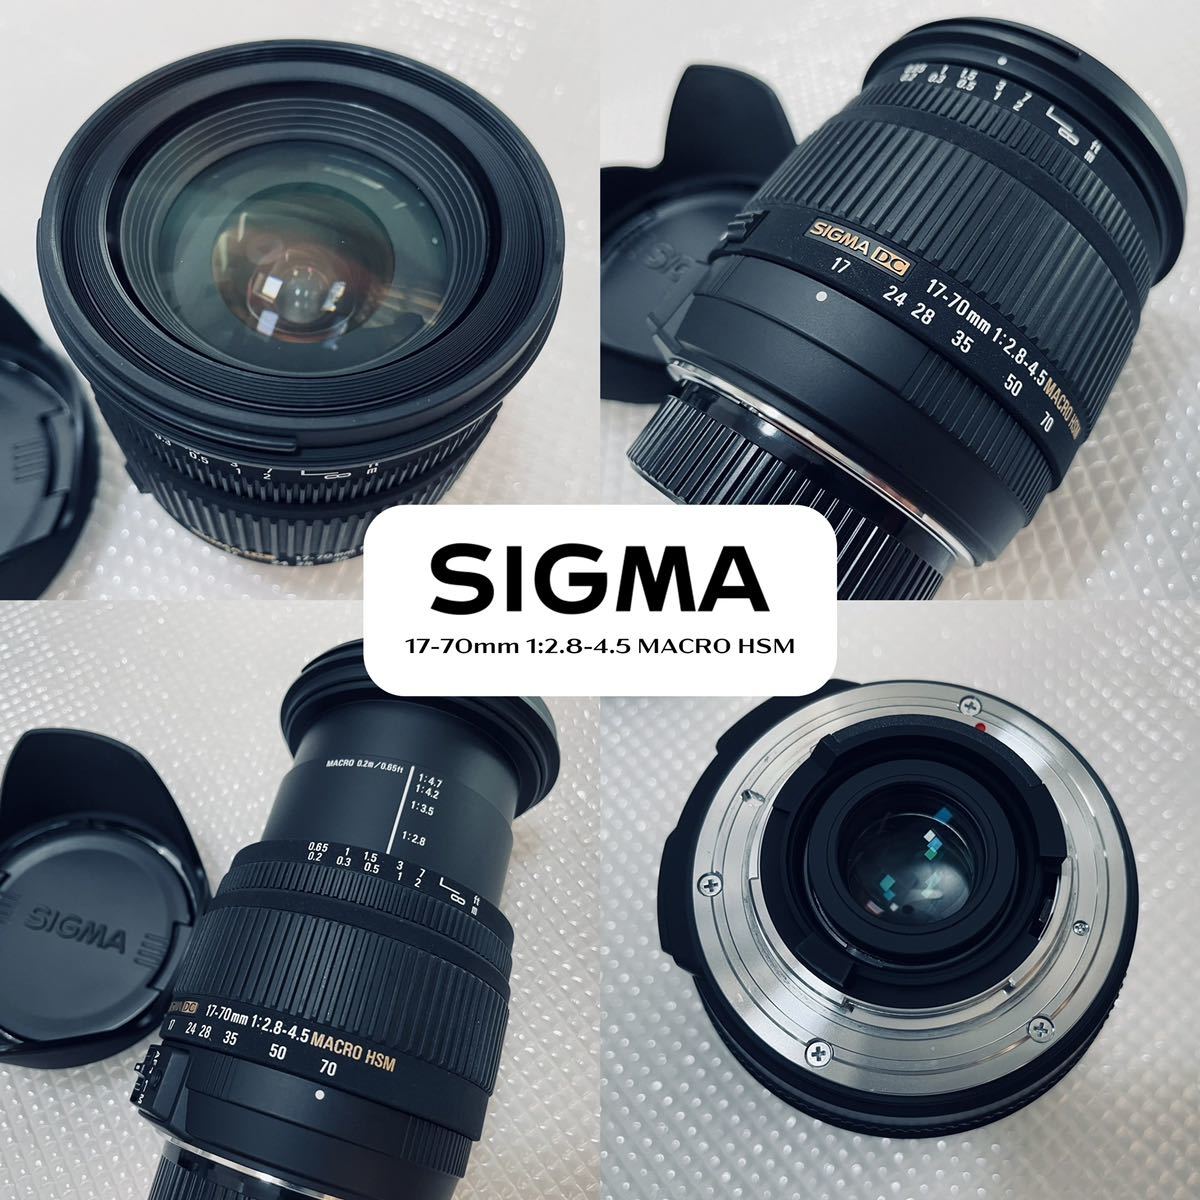 見事な [美品]シグマ SIGMA ニコン用 Nikon HSM MACRO F2.8-4.5 17-70mm DC - シグマ -  reachahand.org